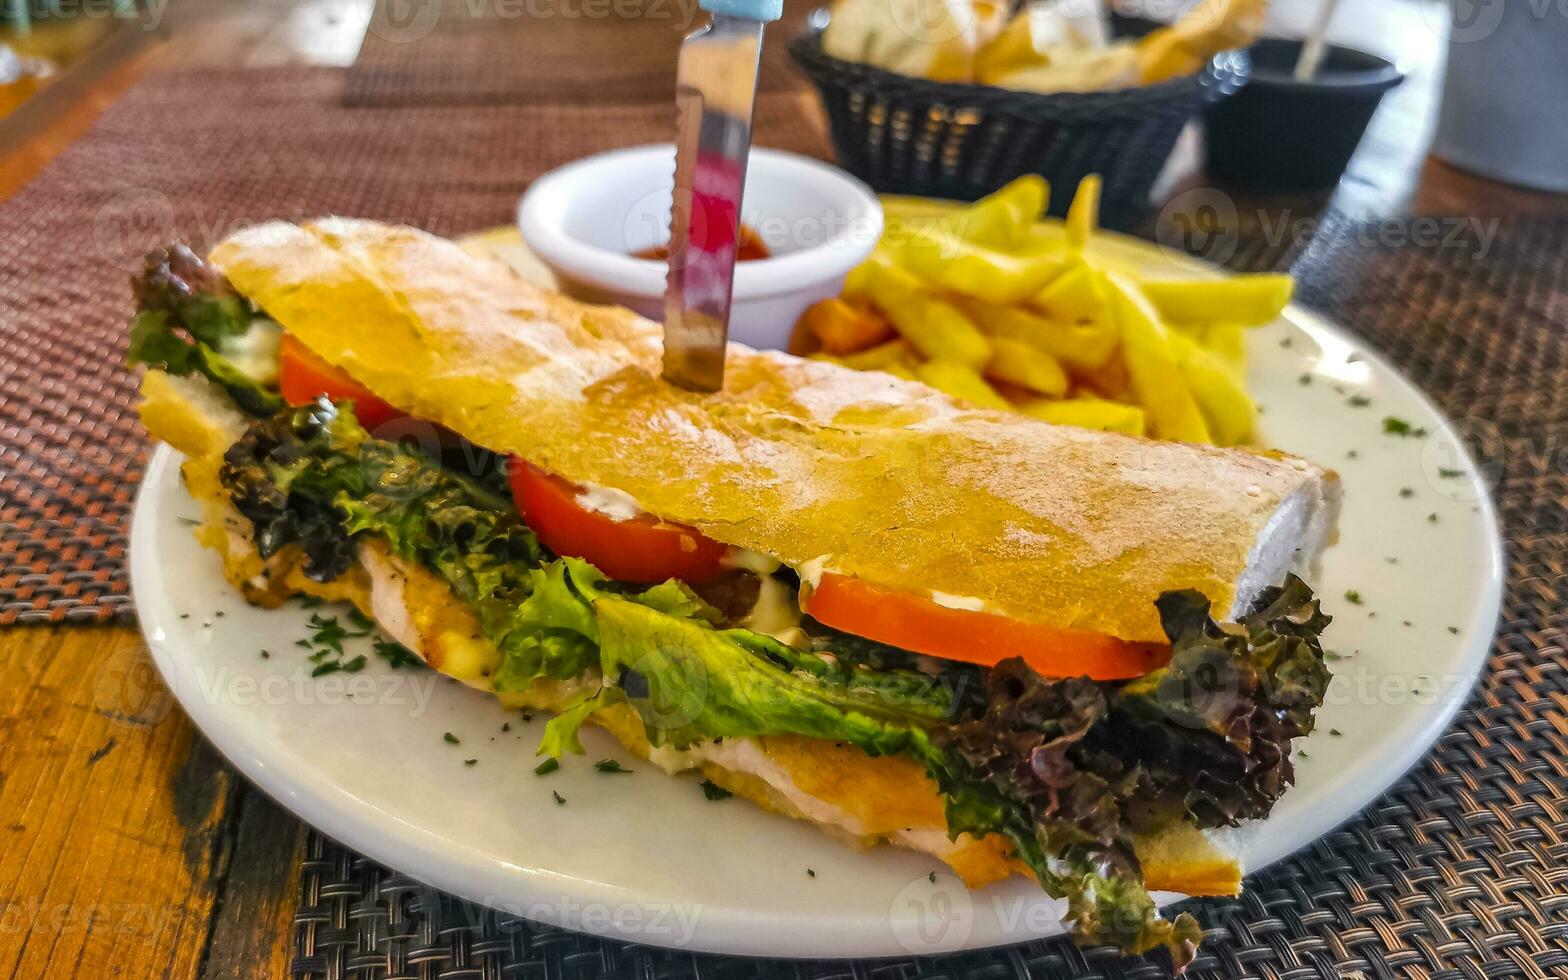 baguete sanduíche torrada pão com frango tomate salada batatas fritas. foto